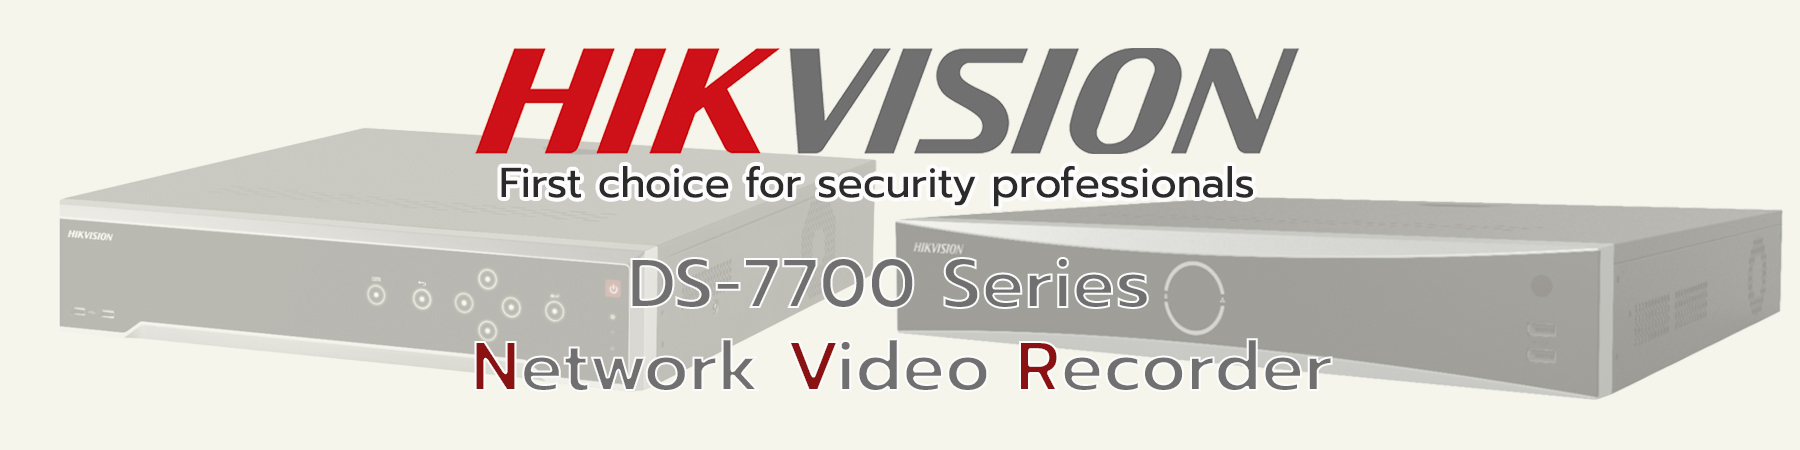 เครื่องบันทึก Hikvision NVR, เครื่องบันทึก Hikvision Network Video Recorder, Hikvision NVR, Hikvision Network Video Recorder, DS-7700 Series